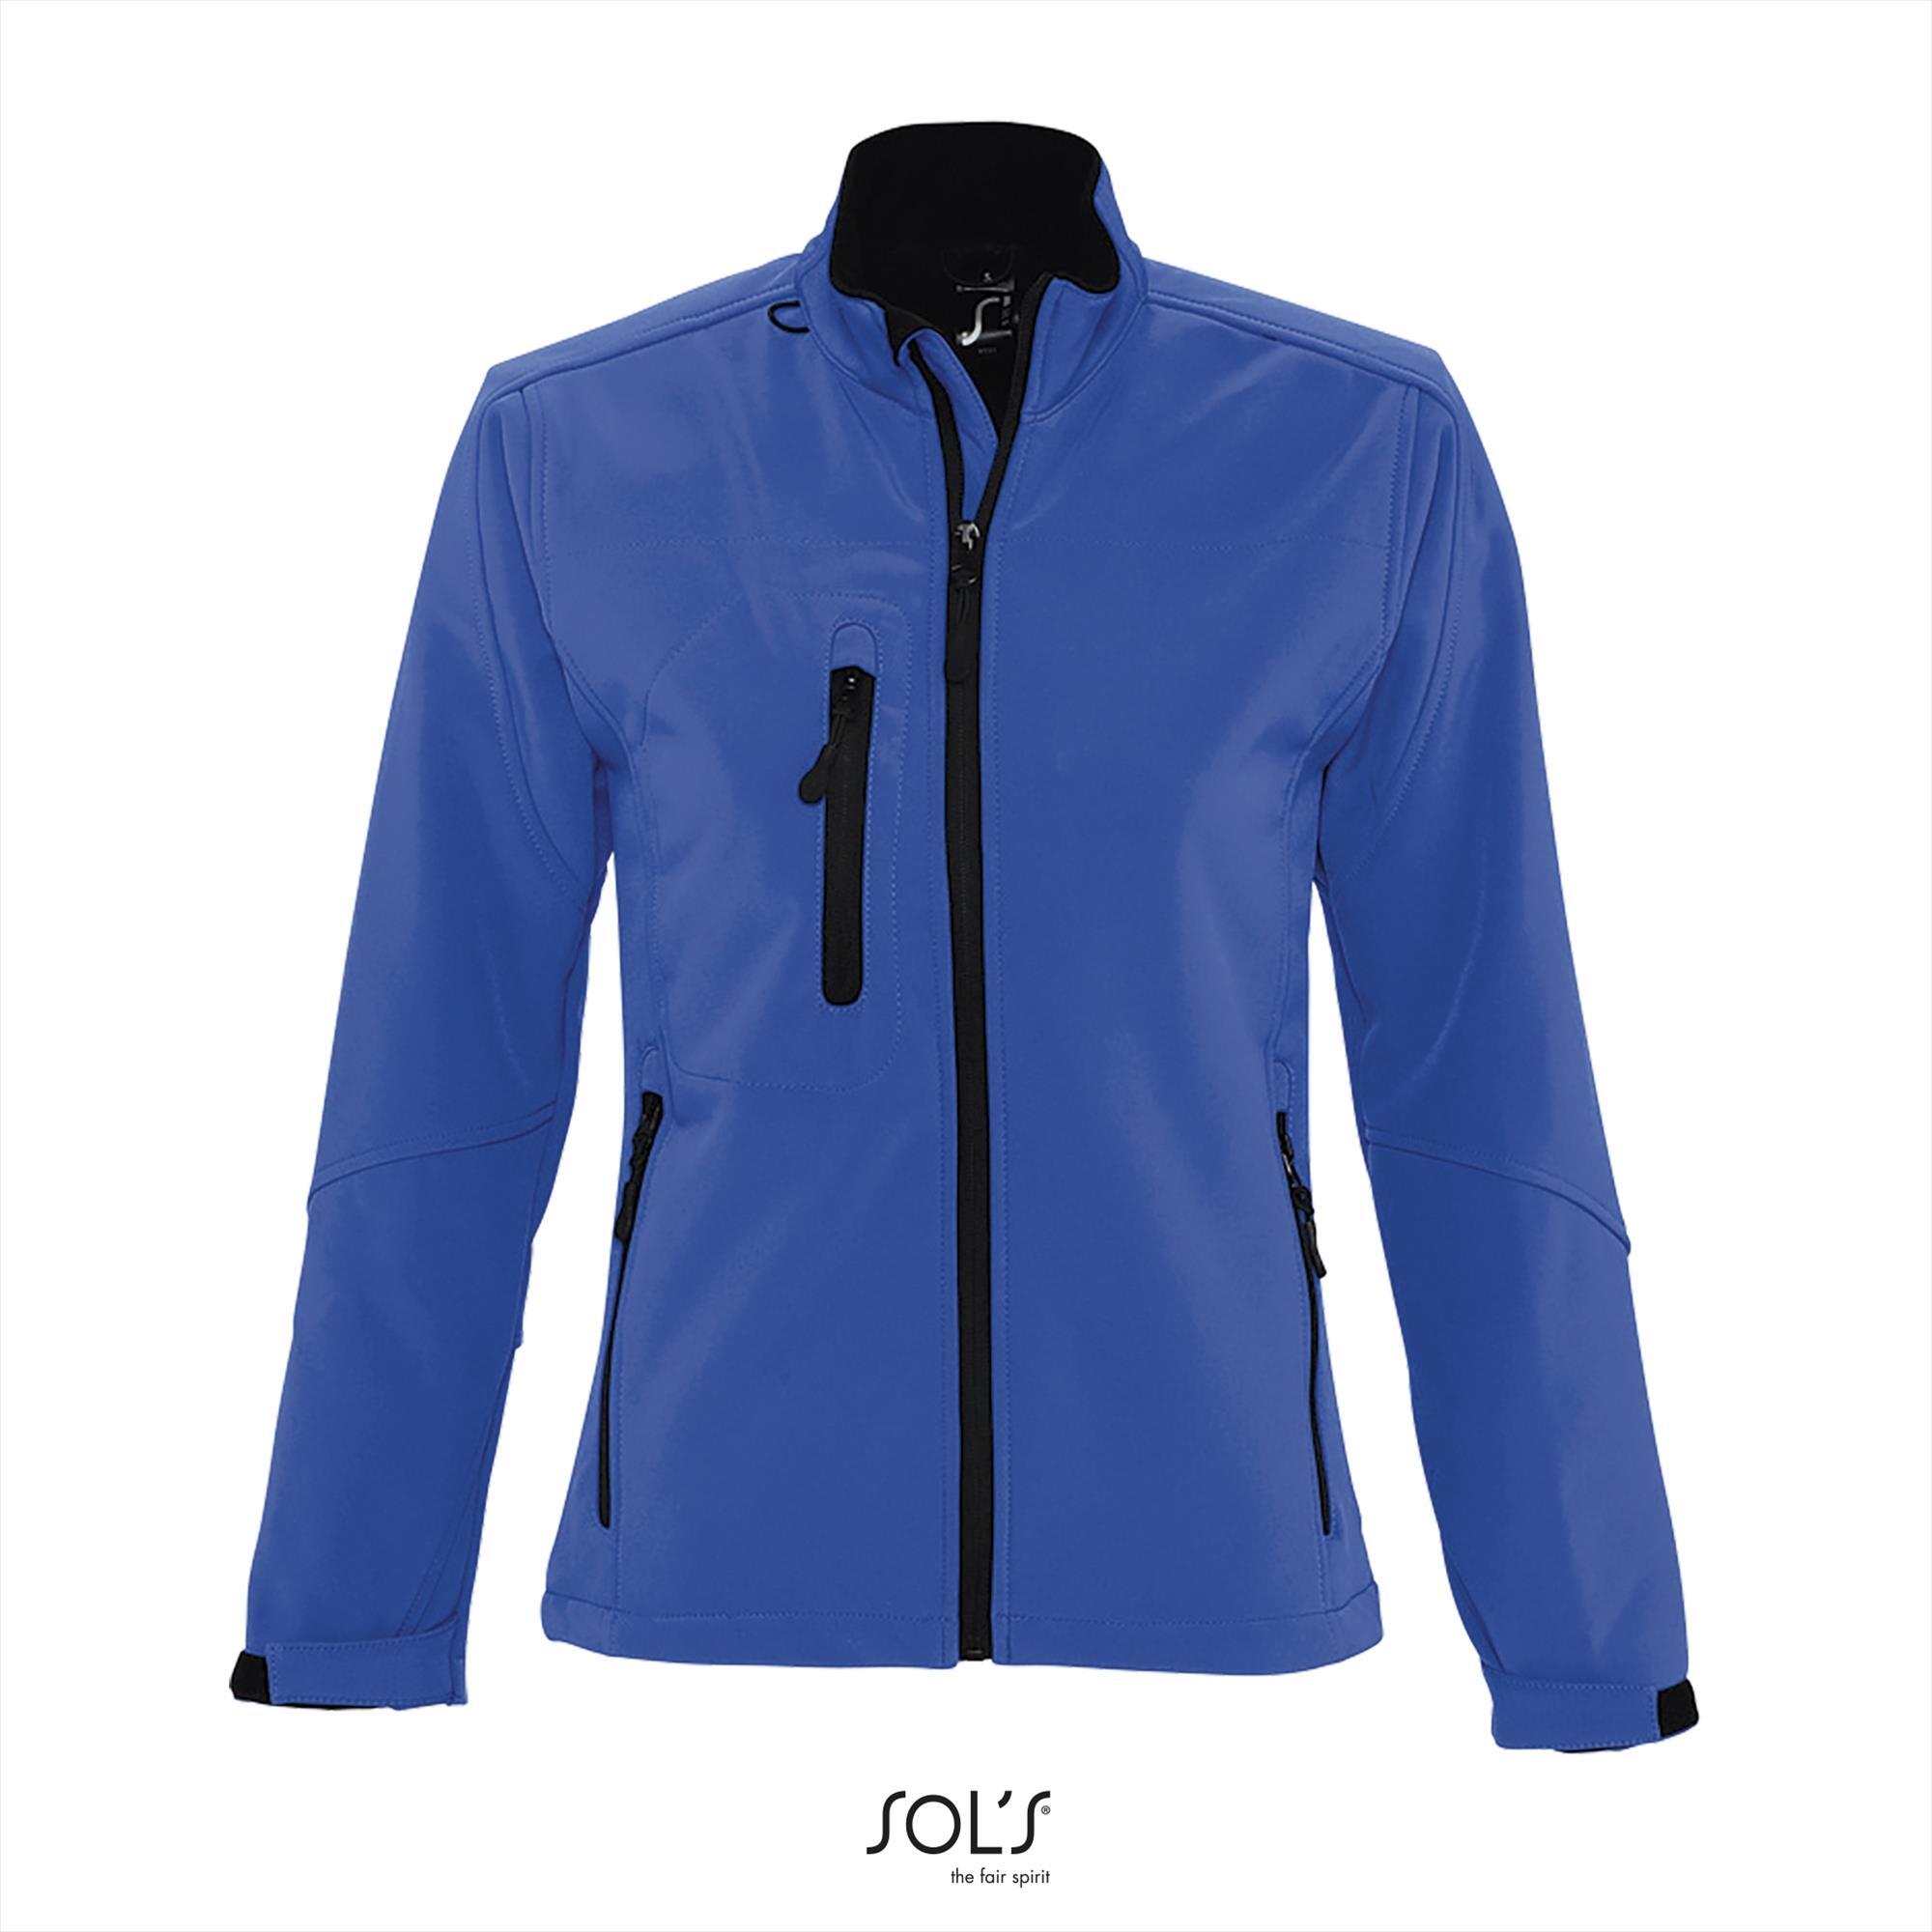 Sportieve dames softshell jacket royal blauw met een borstzakje.